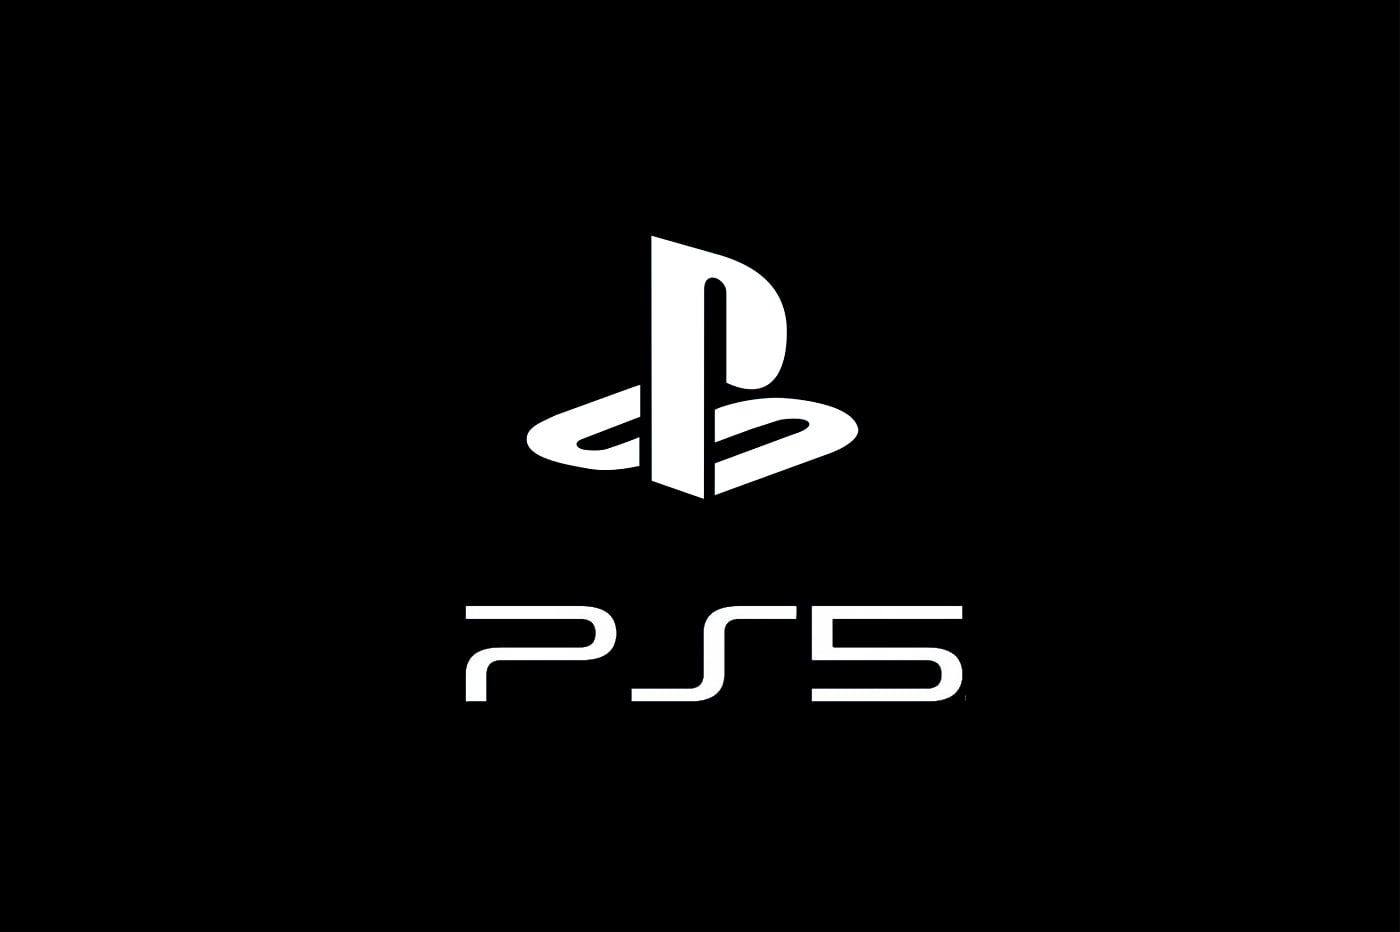 Ps5 não terá lançamento em outubro | b3282431 ps5 pas avant avril 2020 | singleplayer | lançamento de two point campus singleplayer